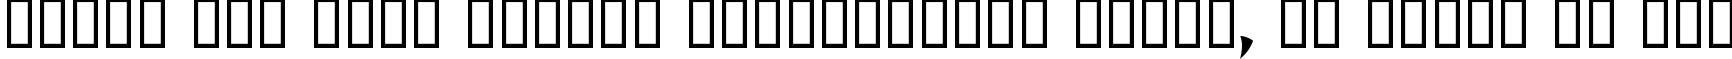 Пример написания шрифтом Wonton by Da Font Mafia текста на русском